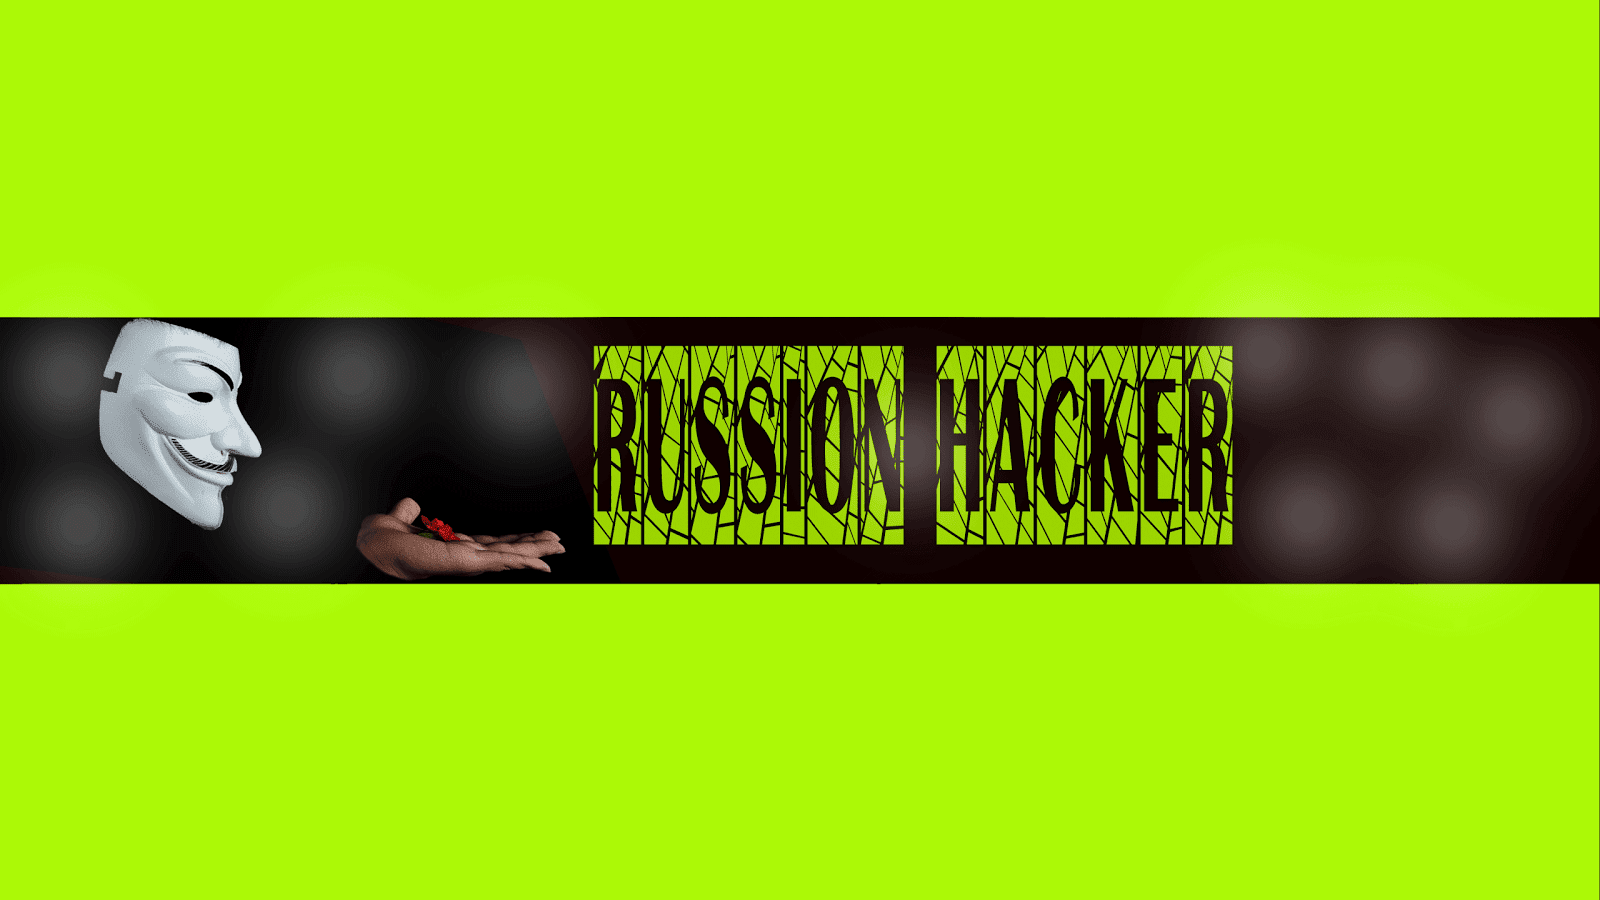 RUSSIAN HACKER